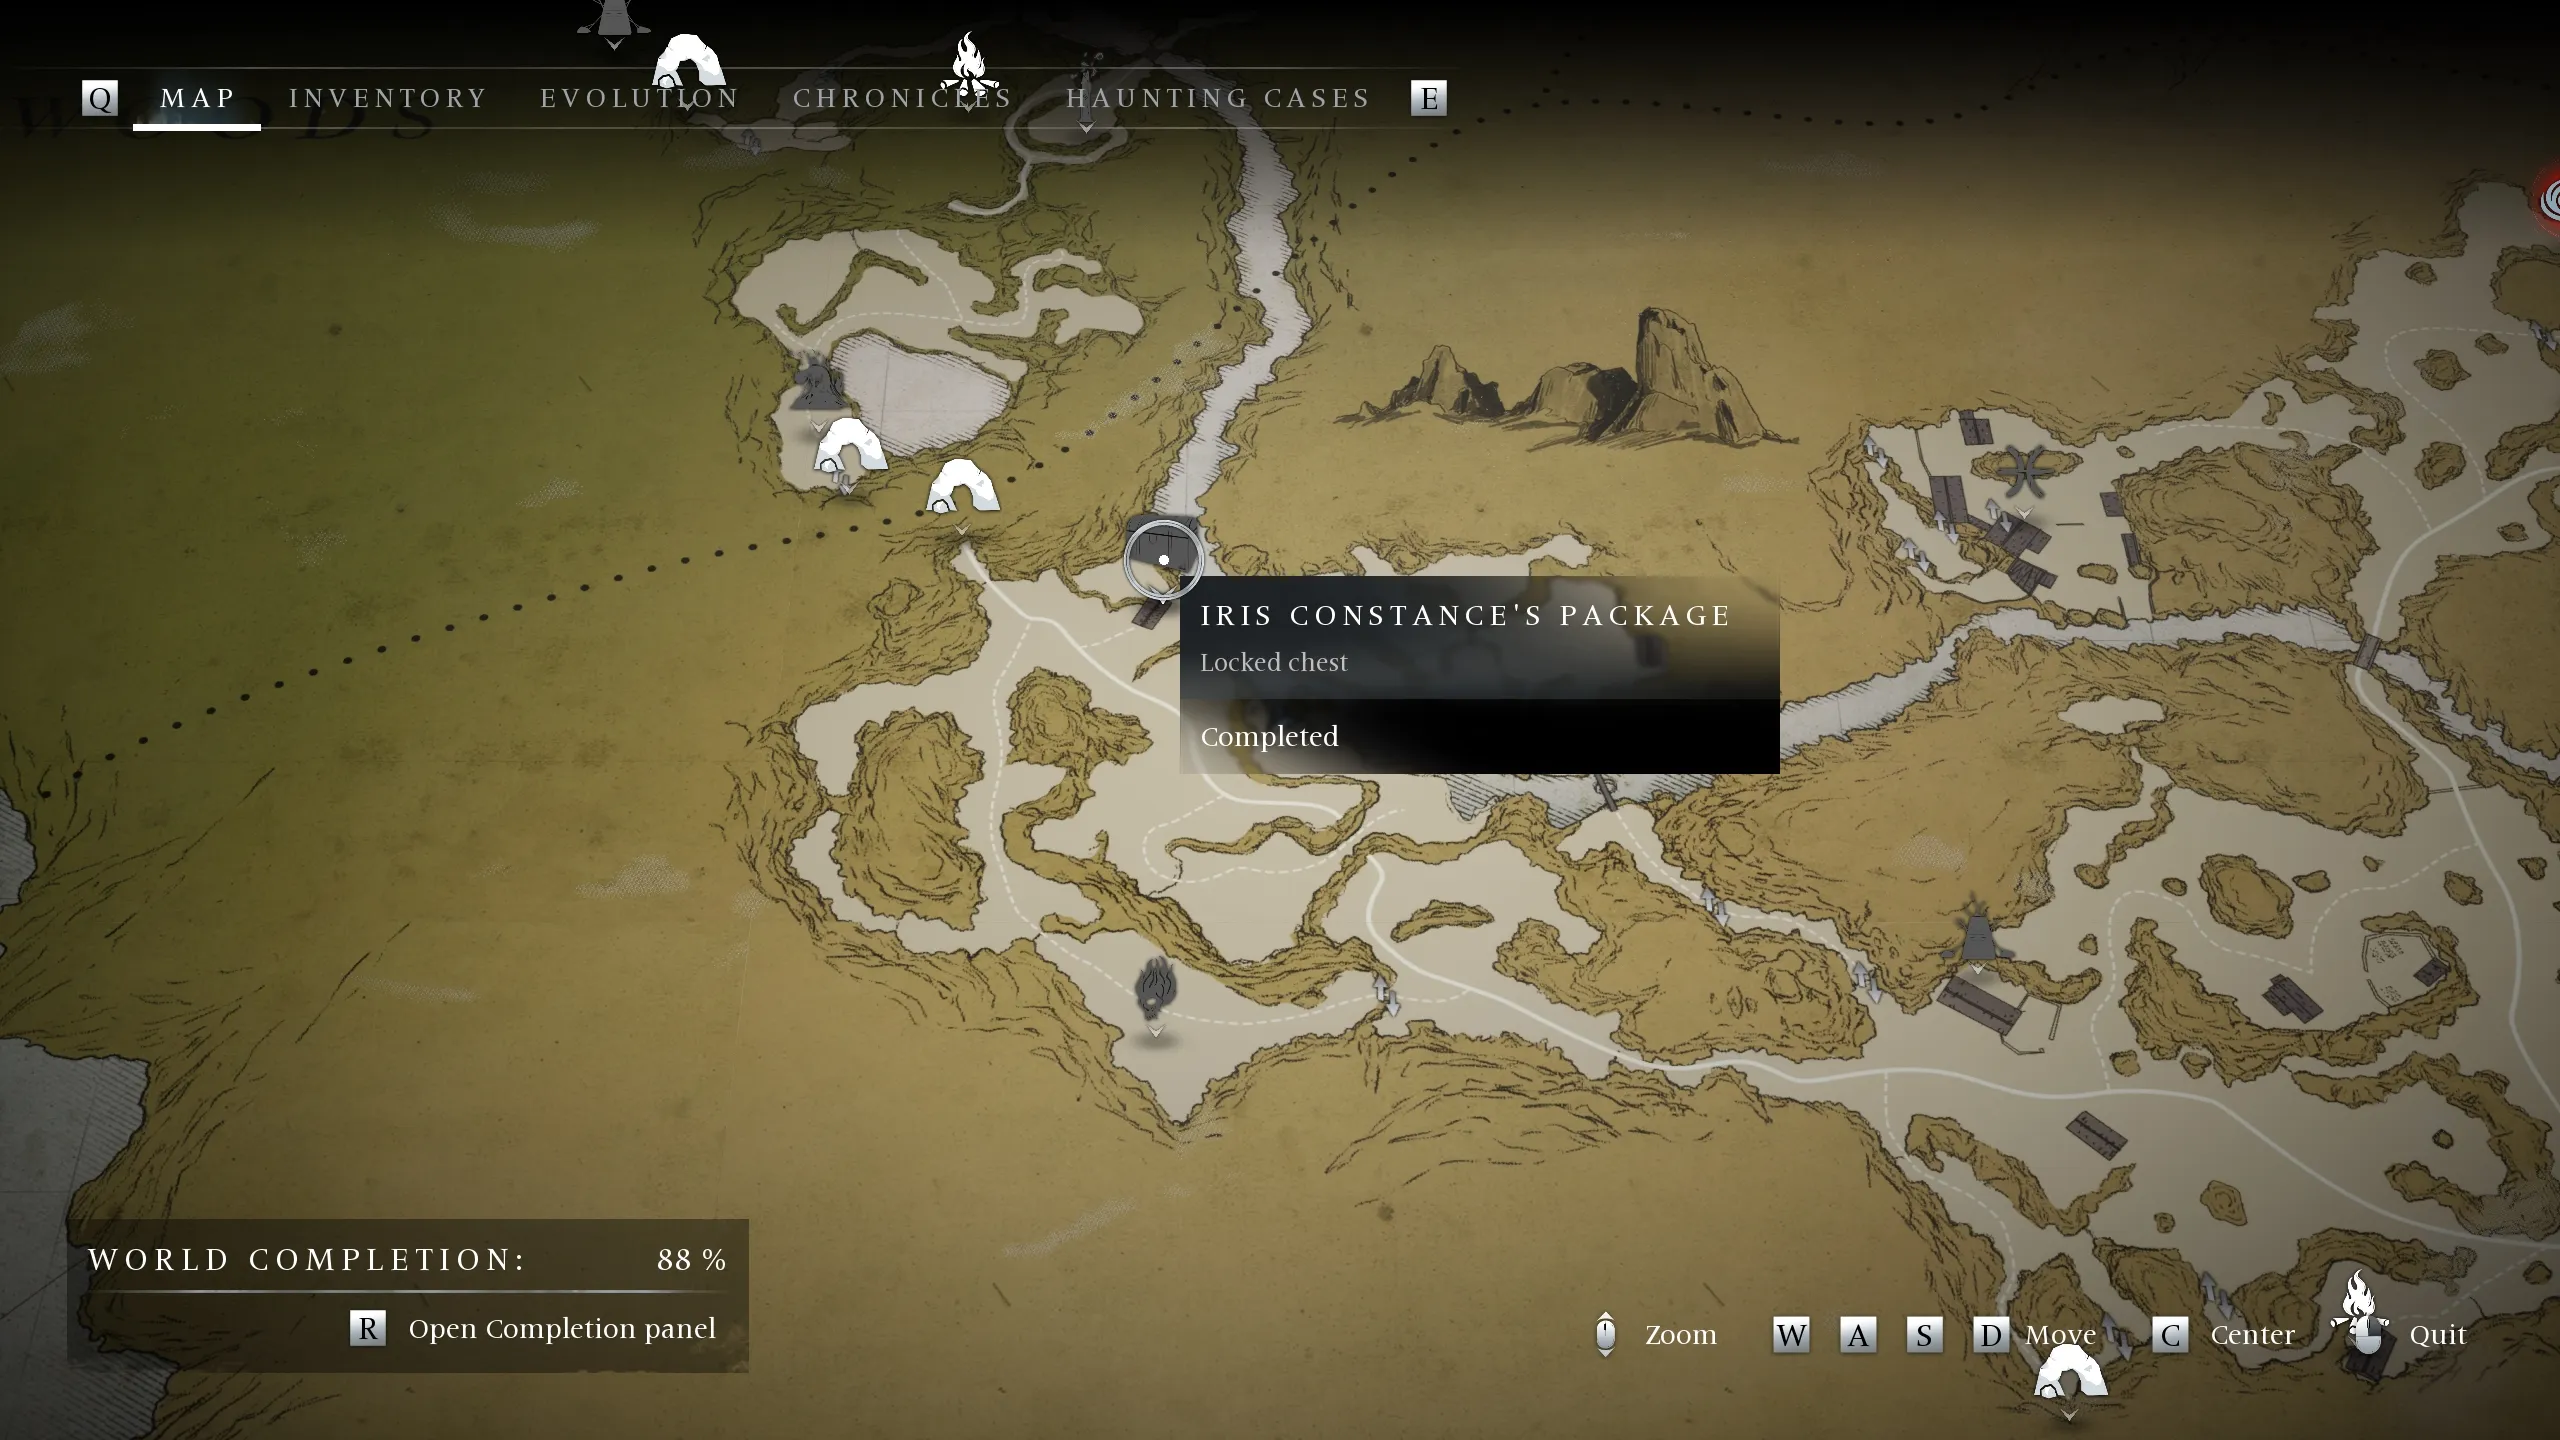 배니셔의 유령들의 아이리스 콘스탄스 패키지 잠긴 상자의 위치를 보여주는 지도